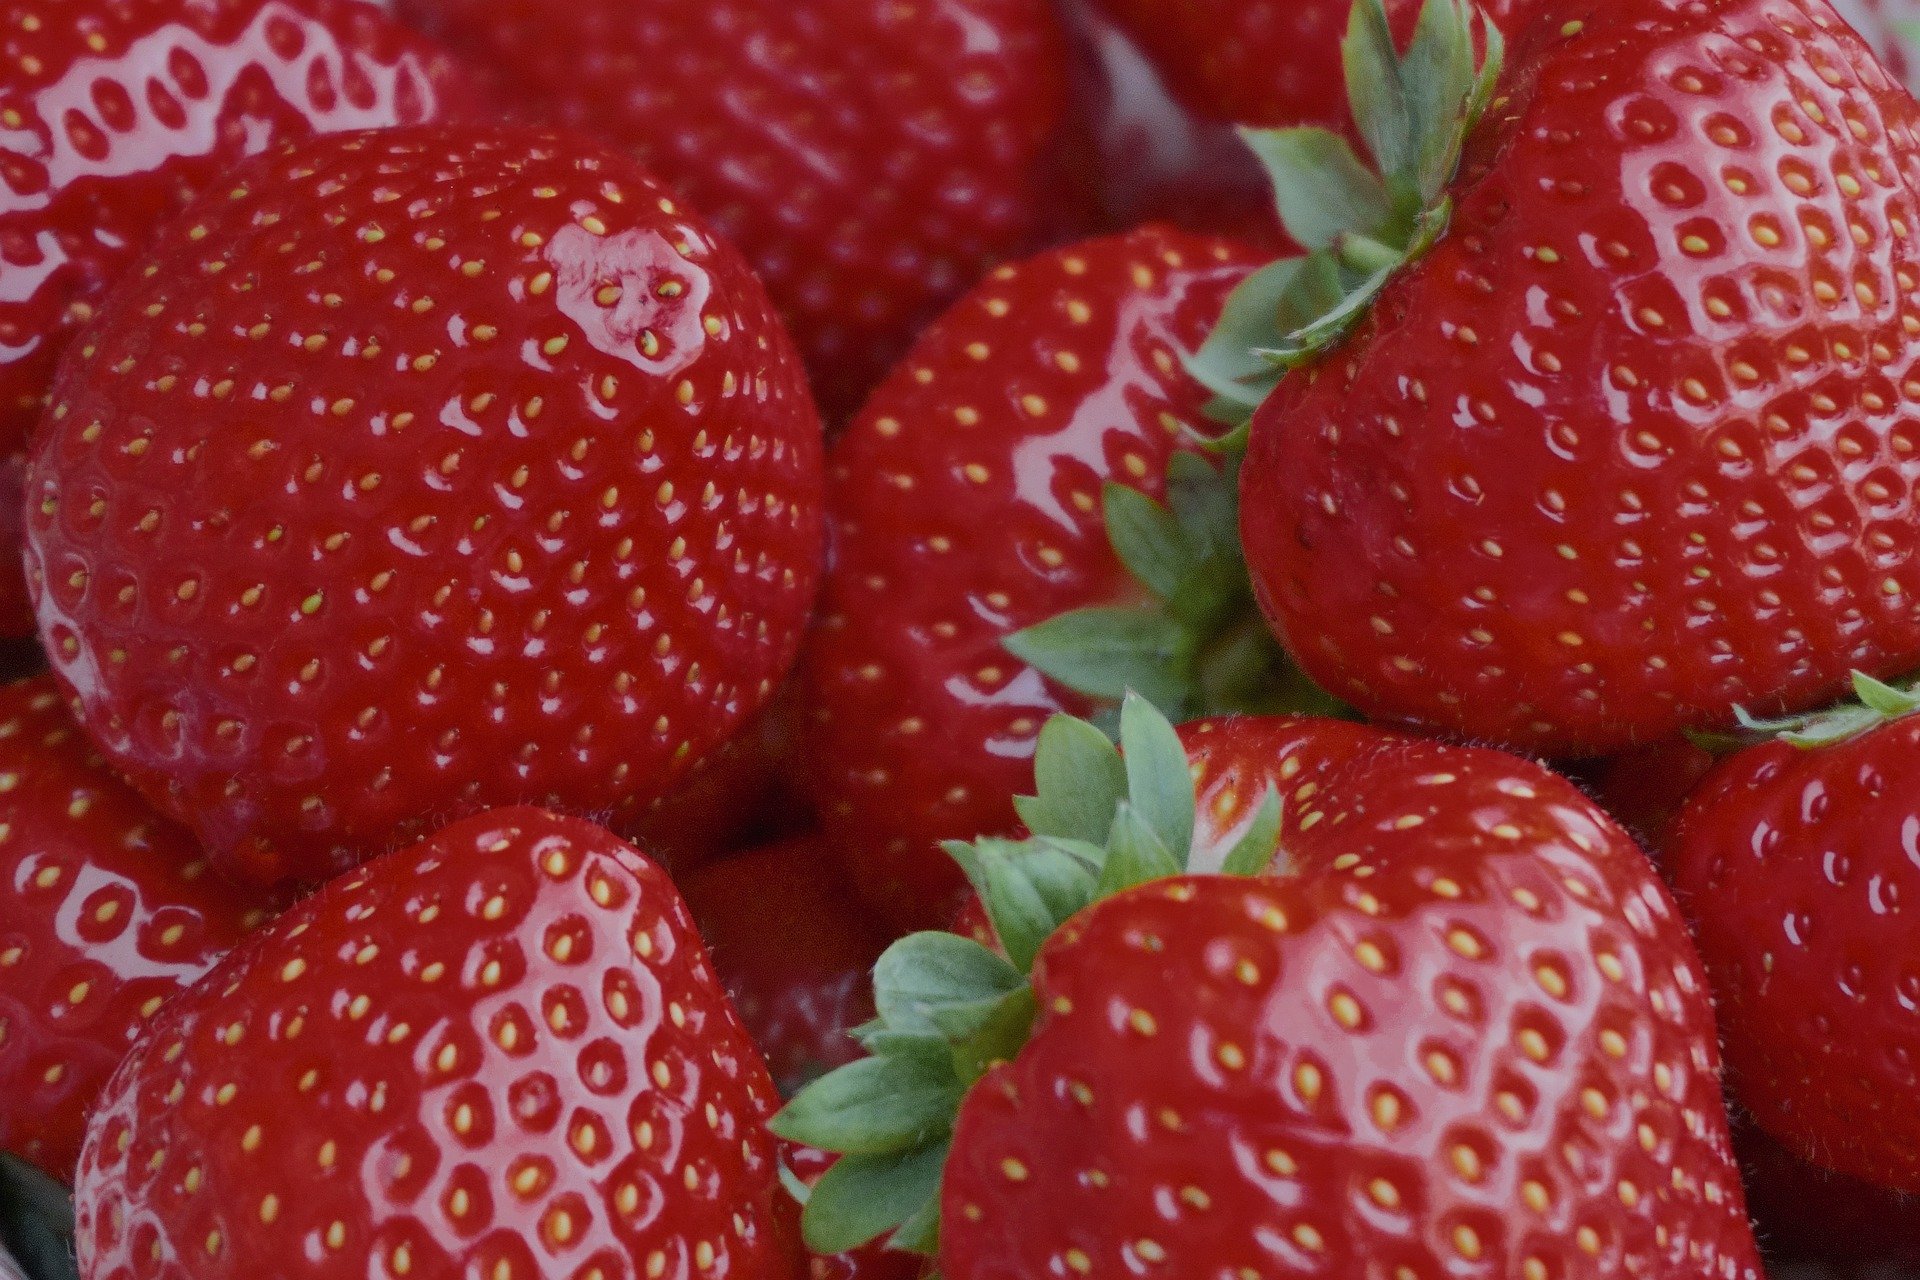 strawberries-7133242_1920